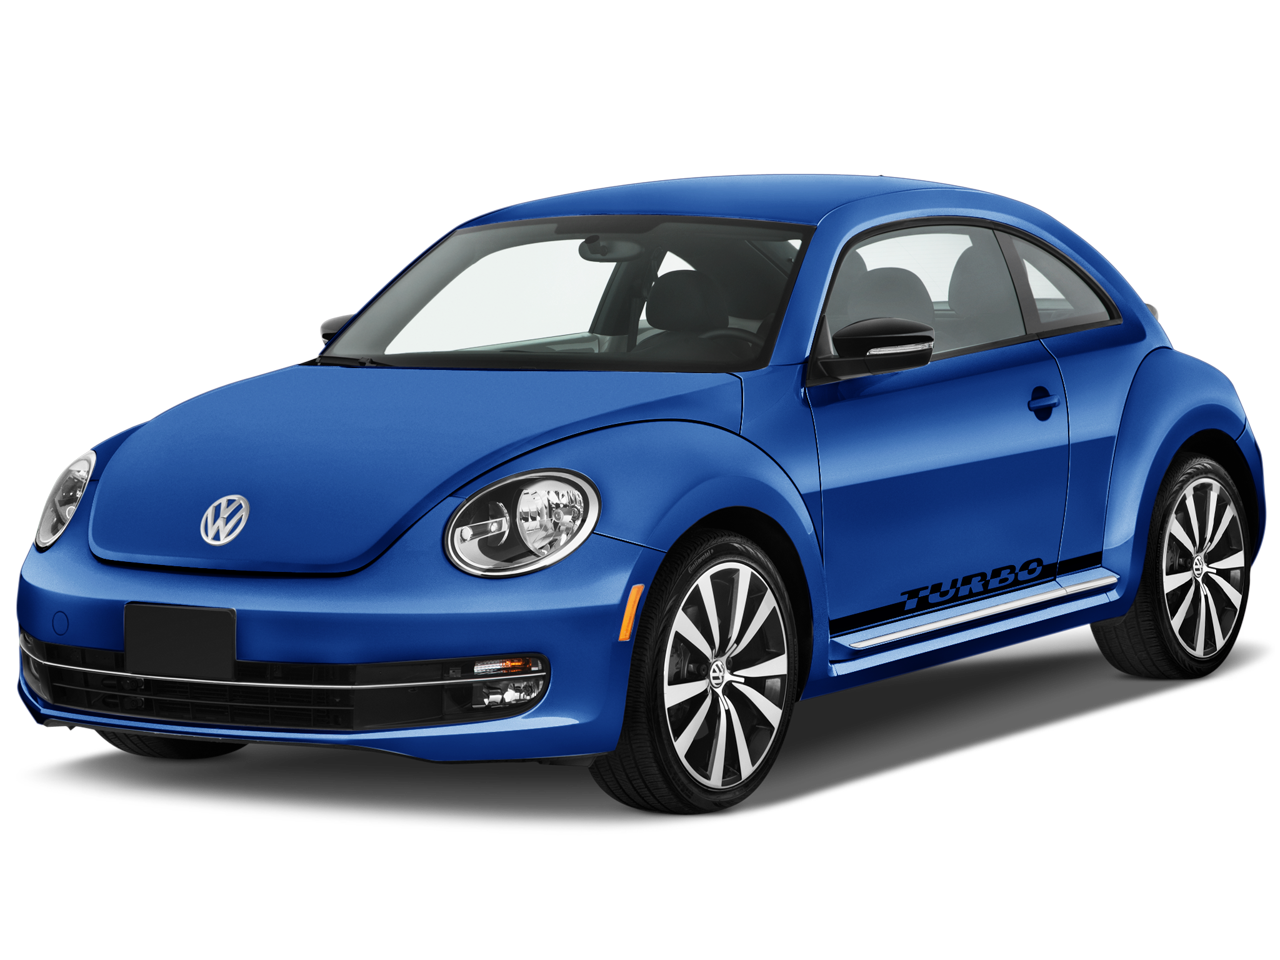 Blue Volkswagen Beetle PNG car image transparent image download, size